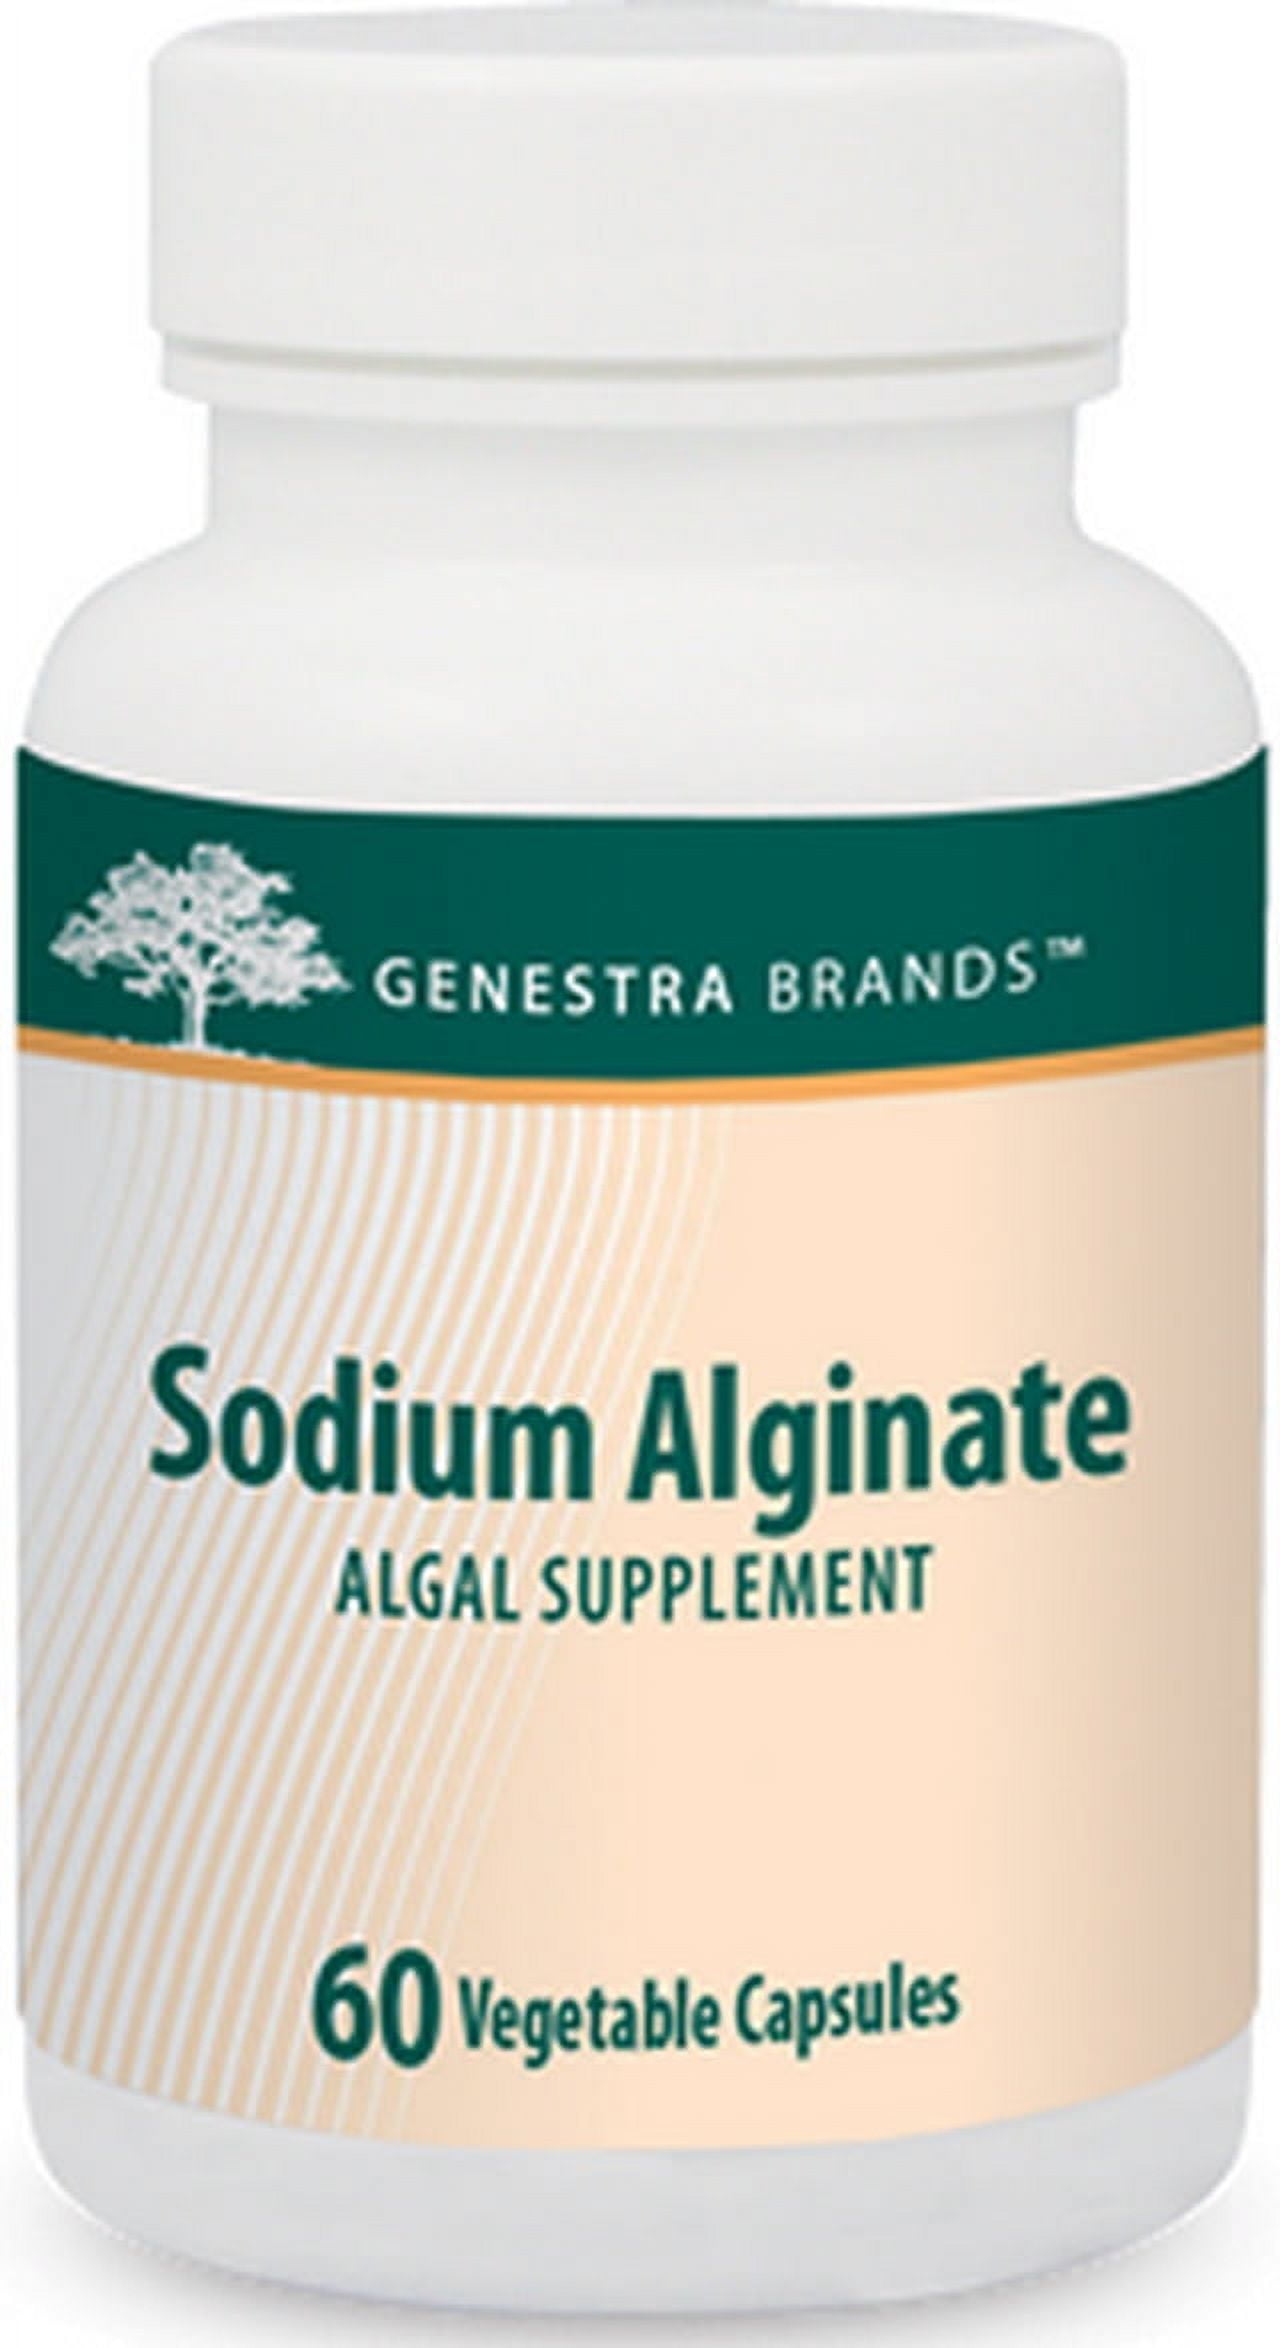 Sodium Alginate, Genestra